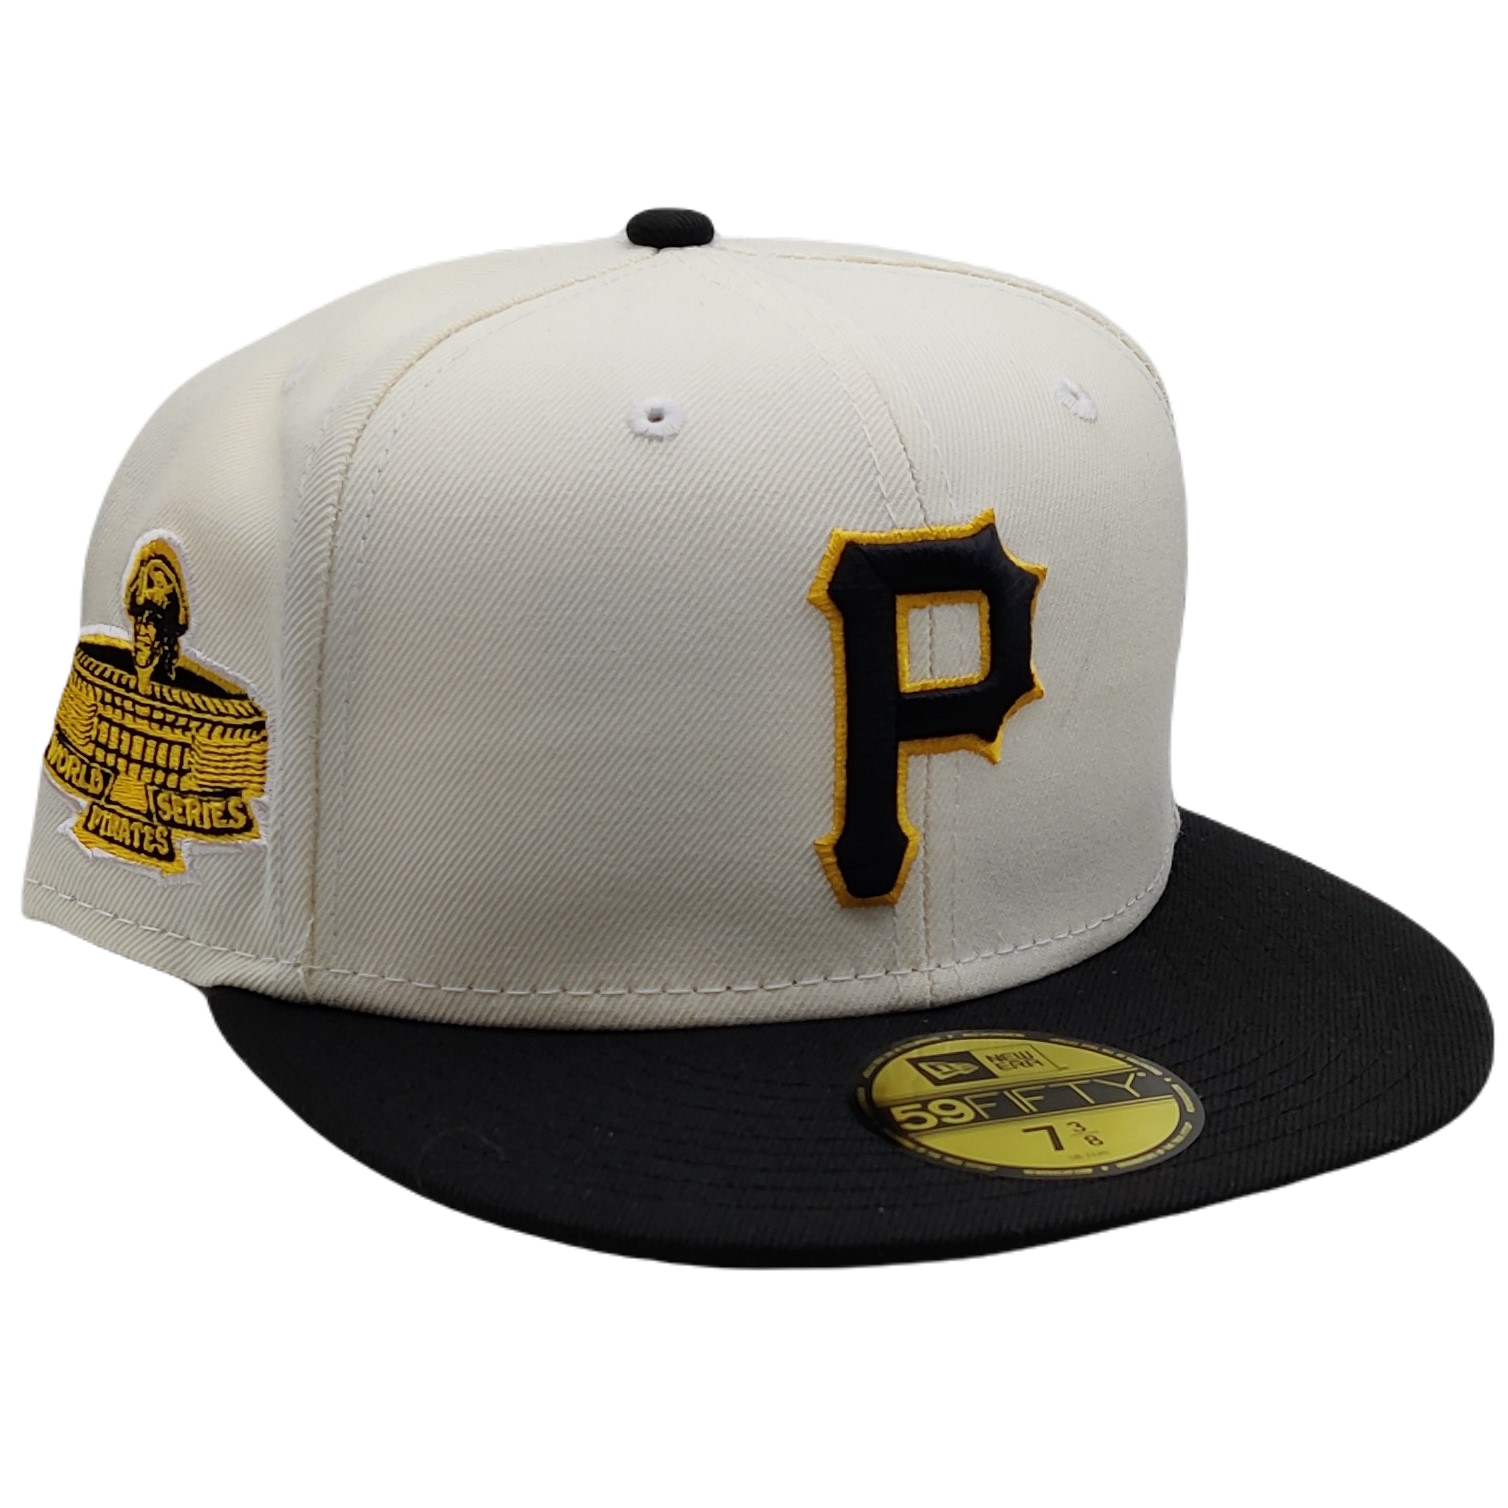 New Era Pittsburgh Pirates Hat 7 1/2